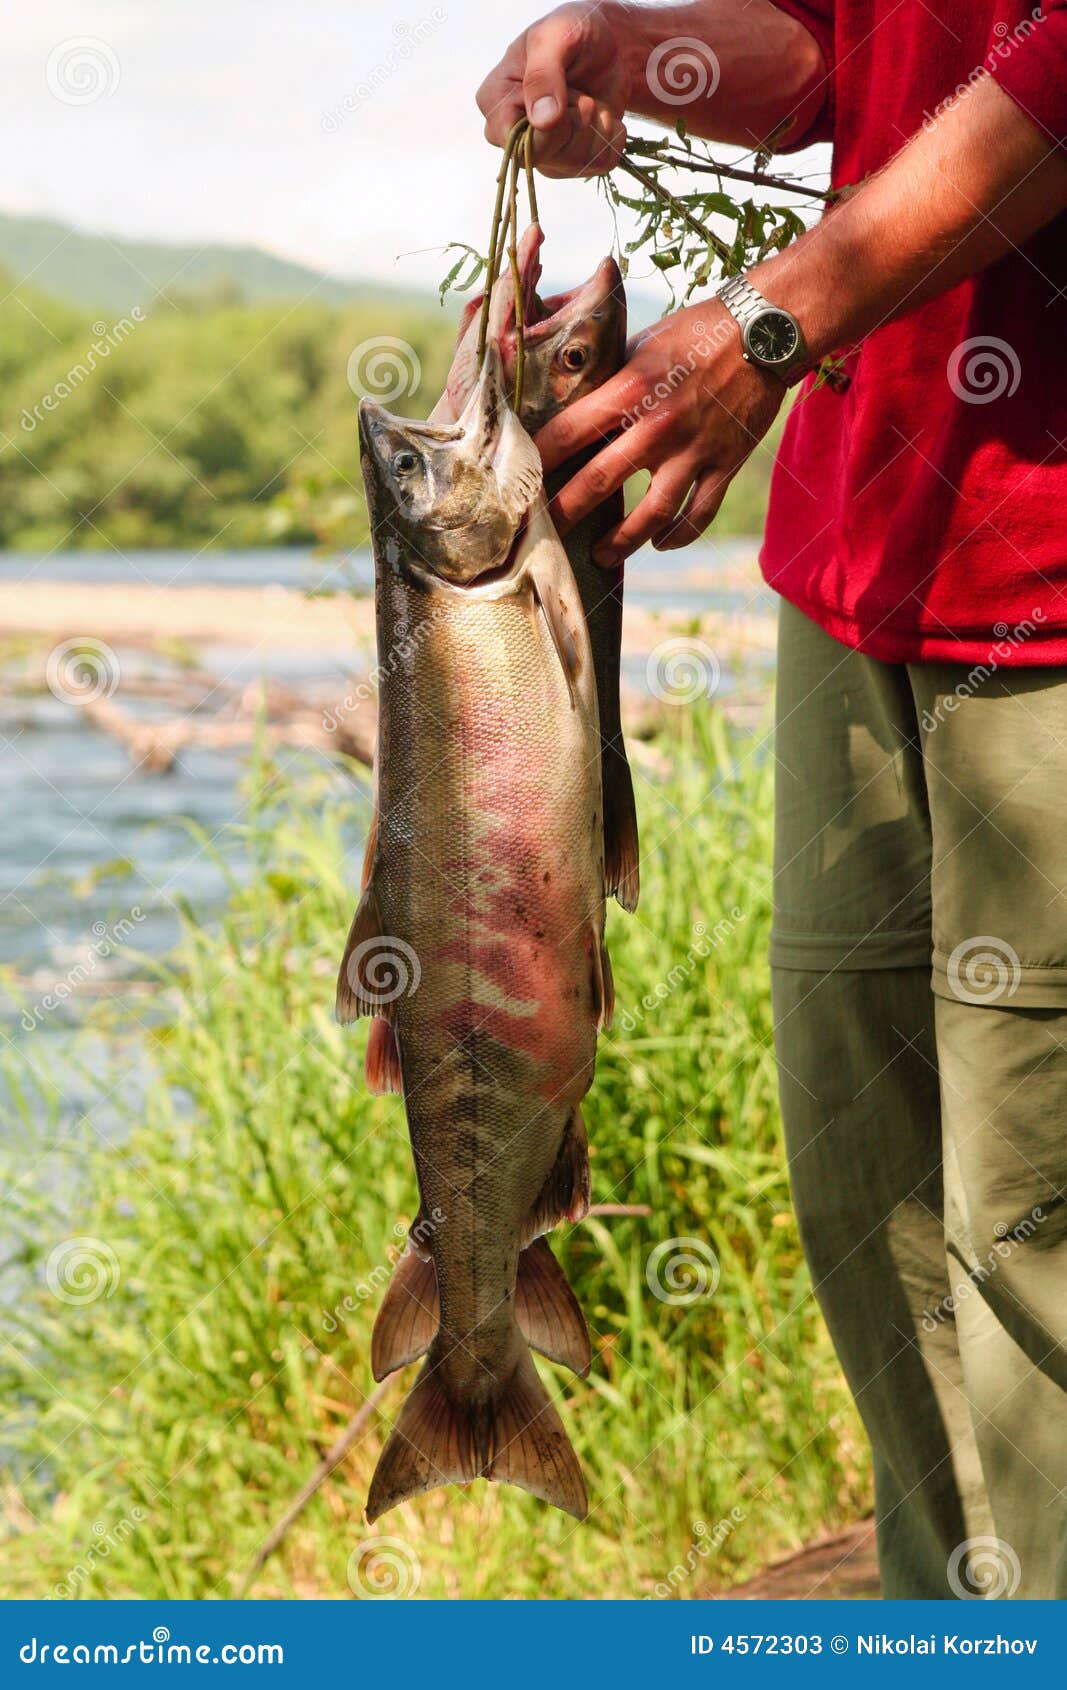 De mens houdt vissen Siberische zalm die in rivier tijdens toerist maart wordt gevangen. Kamchatka